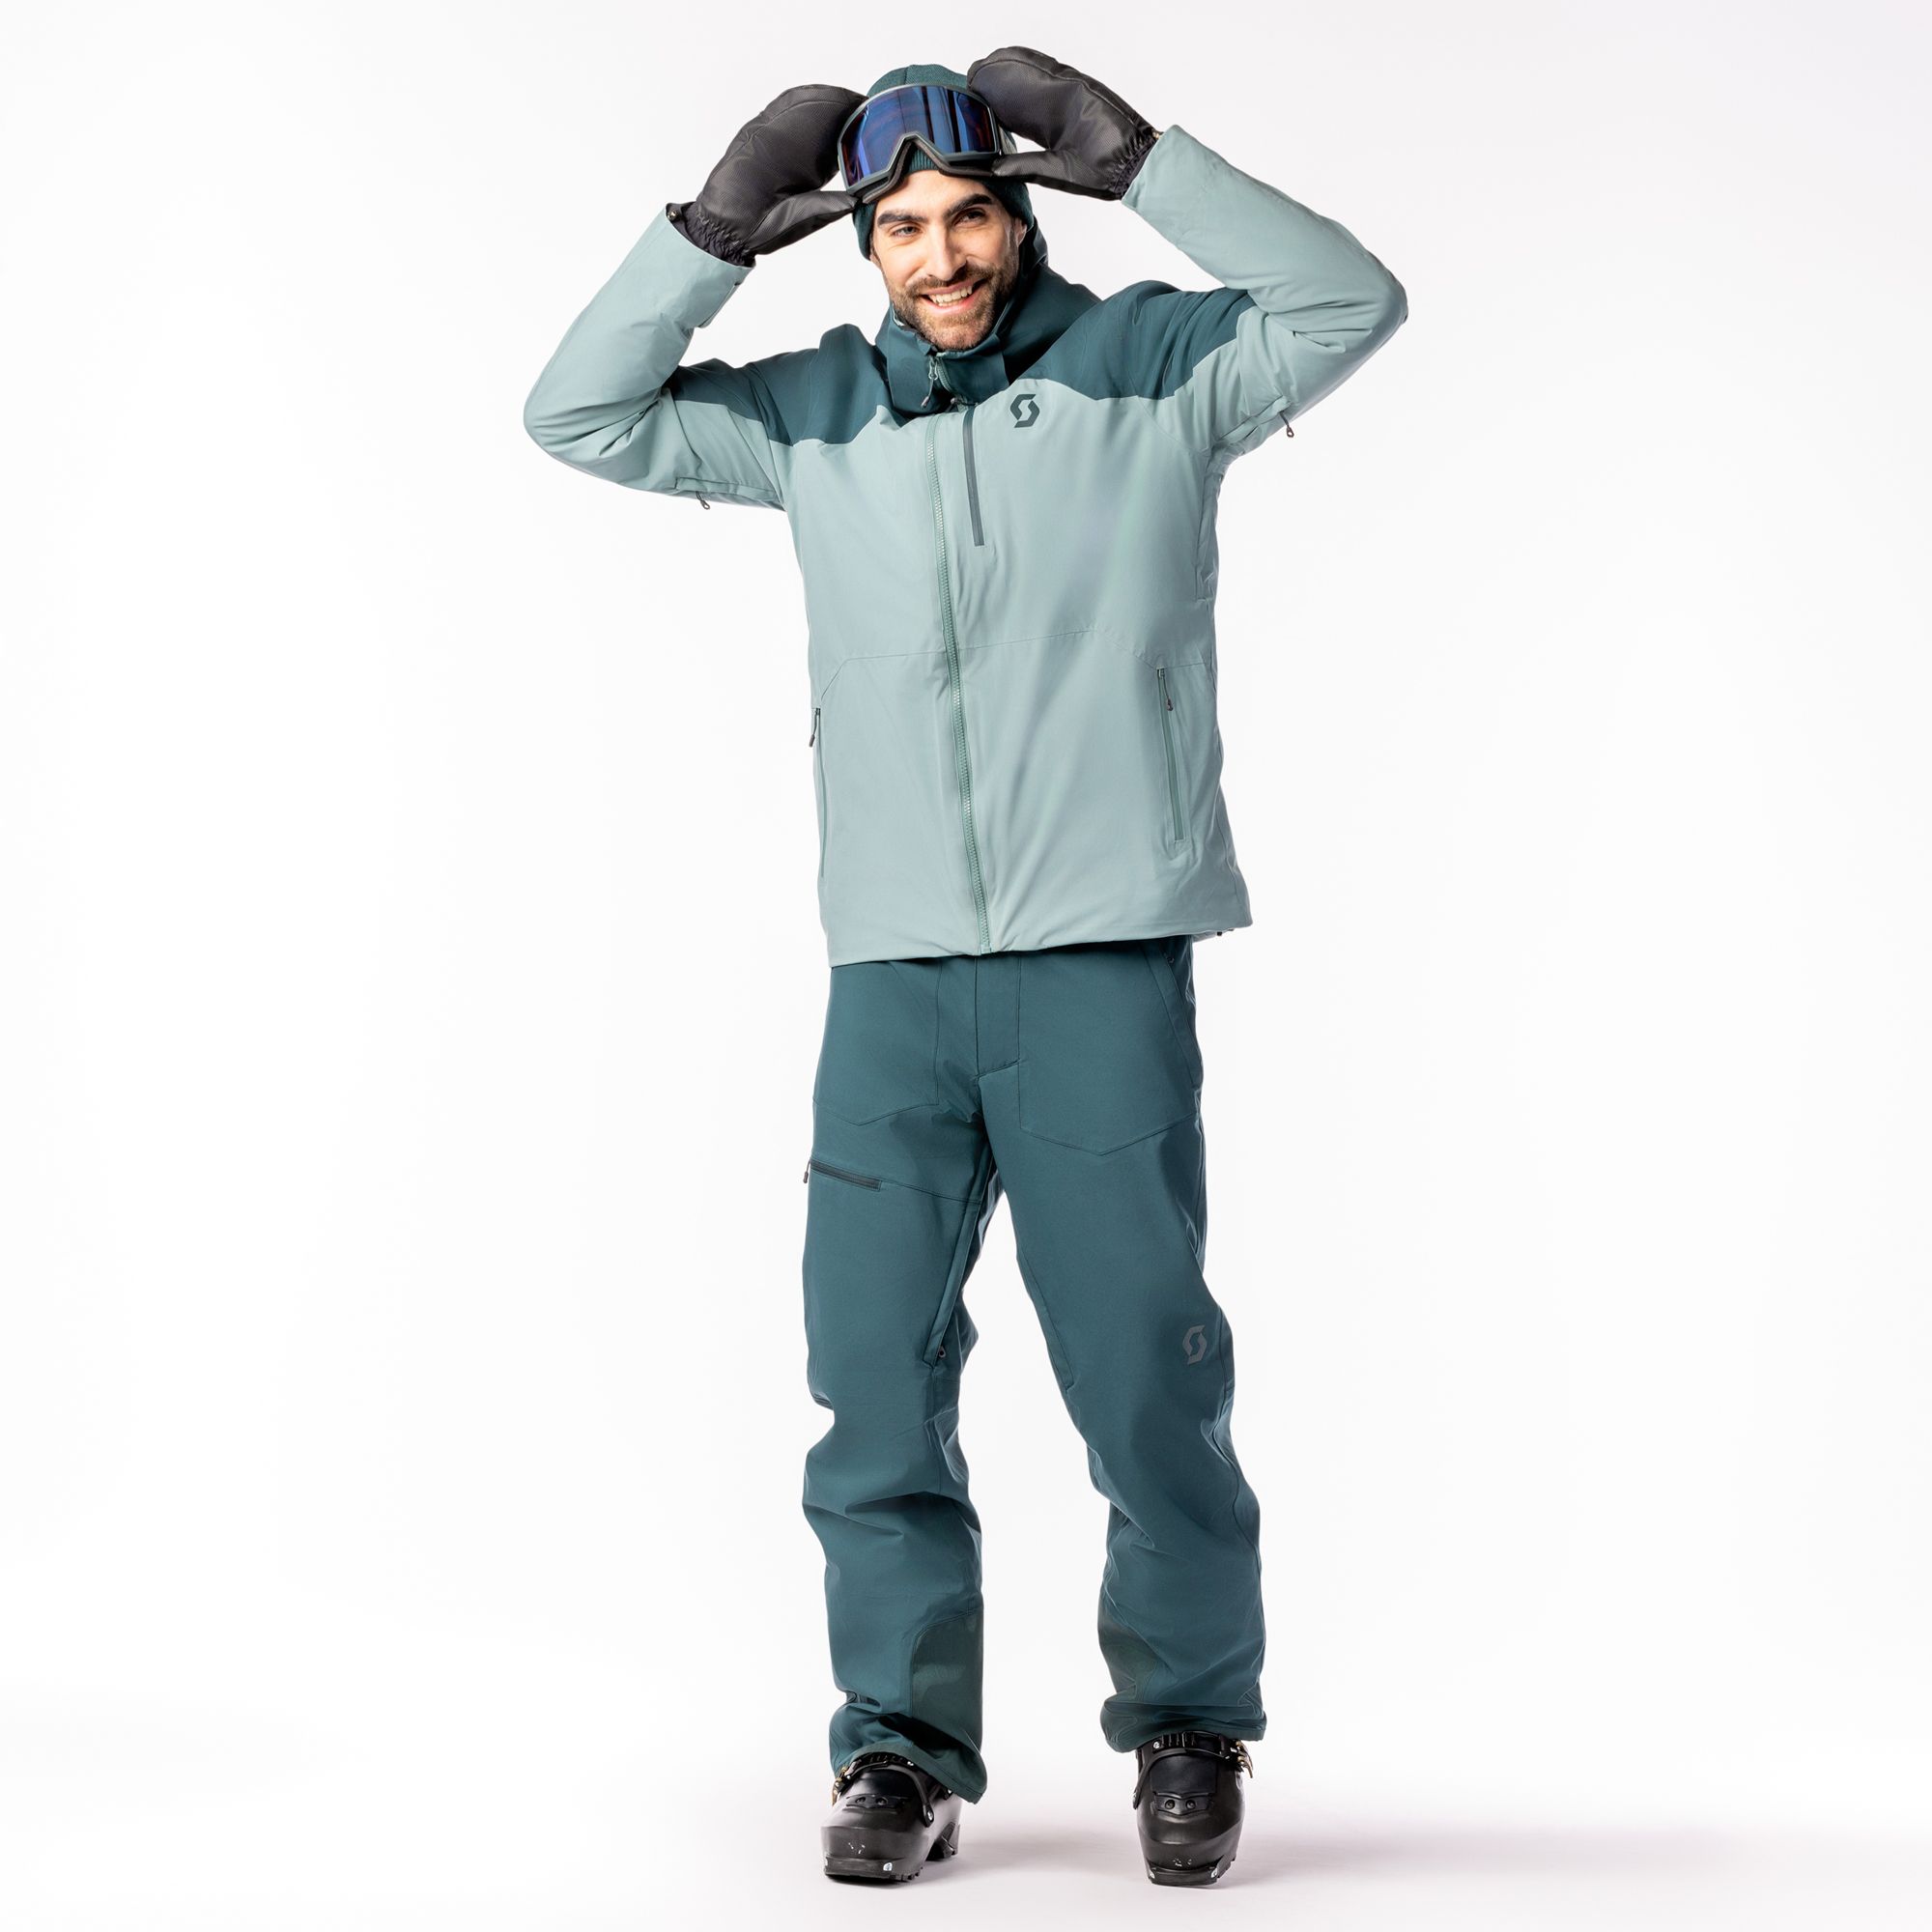  Pant Ultimate Dryo 10 nightfal blu - ski pants - SCOTT -  109.88 € - outdoorové oblečení a vybavení shop